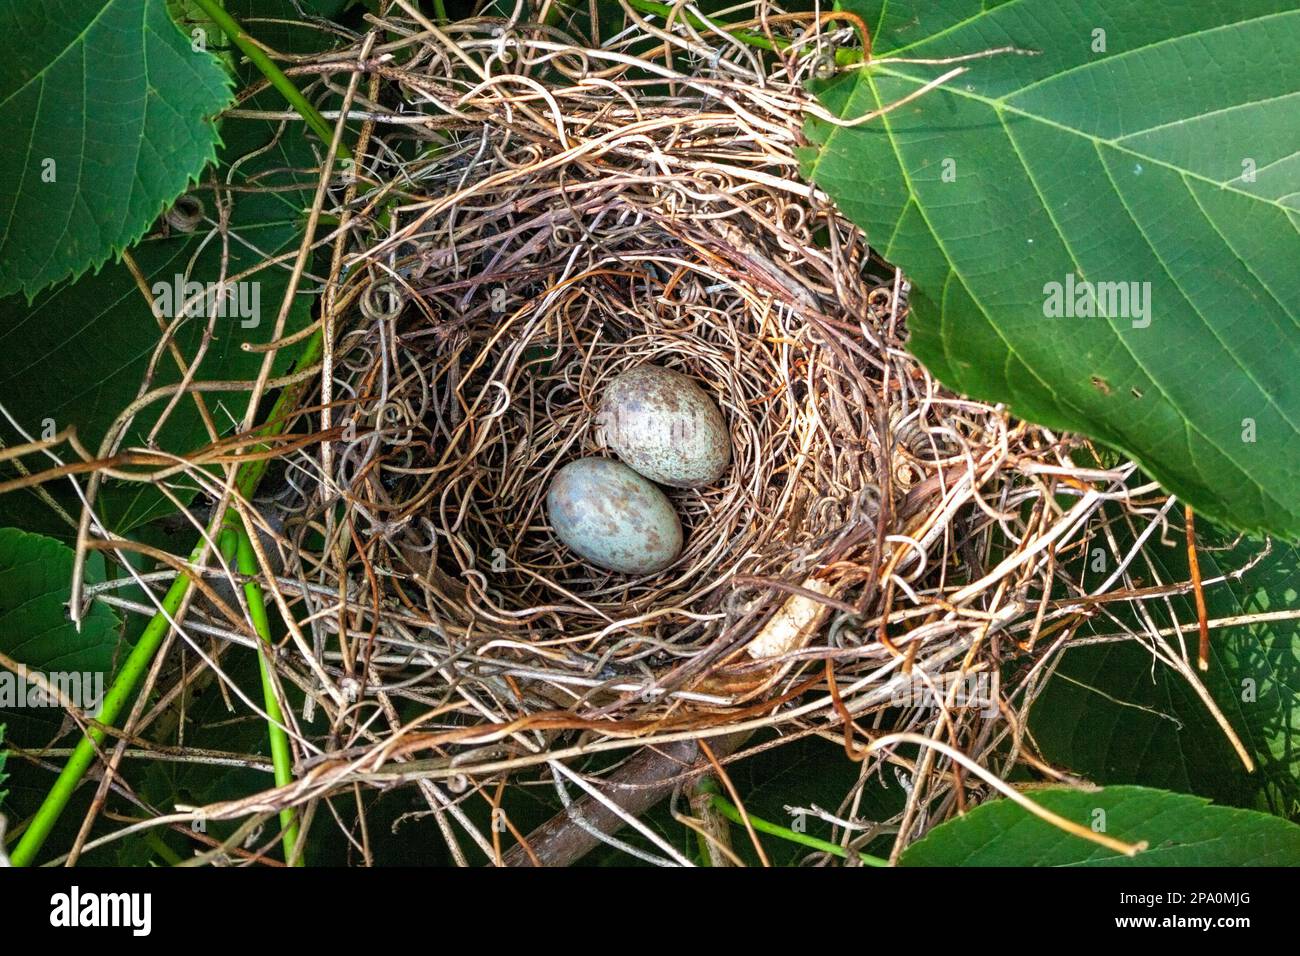 Due uova cardinali, blu con macchie marroni, si posano a riposo in un nido. Le uova e il nido sono quasi nascosti da foglie verdi. Foto Stock